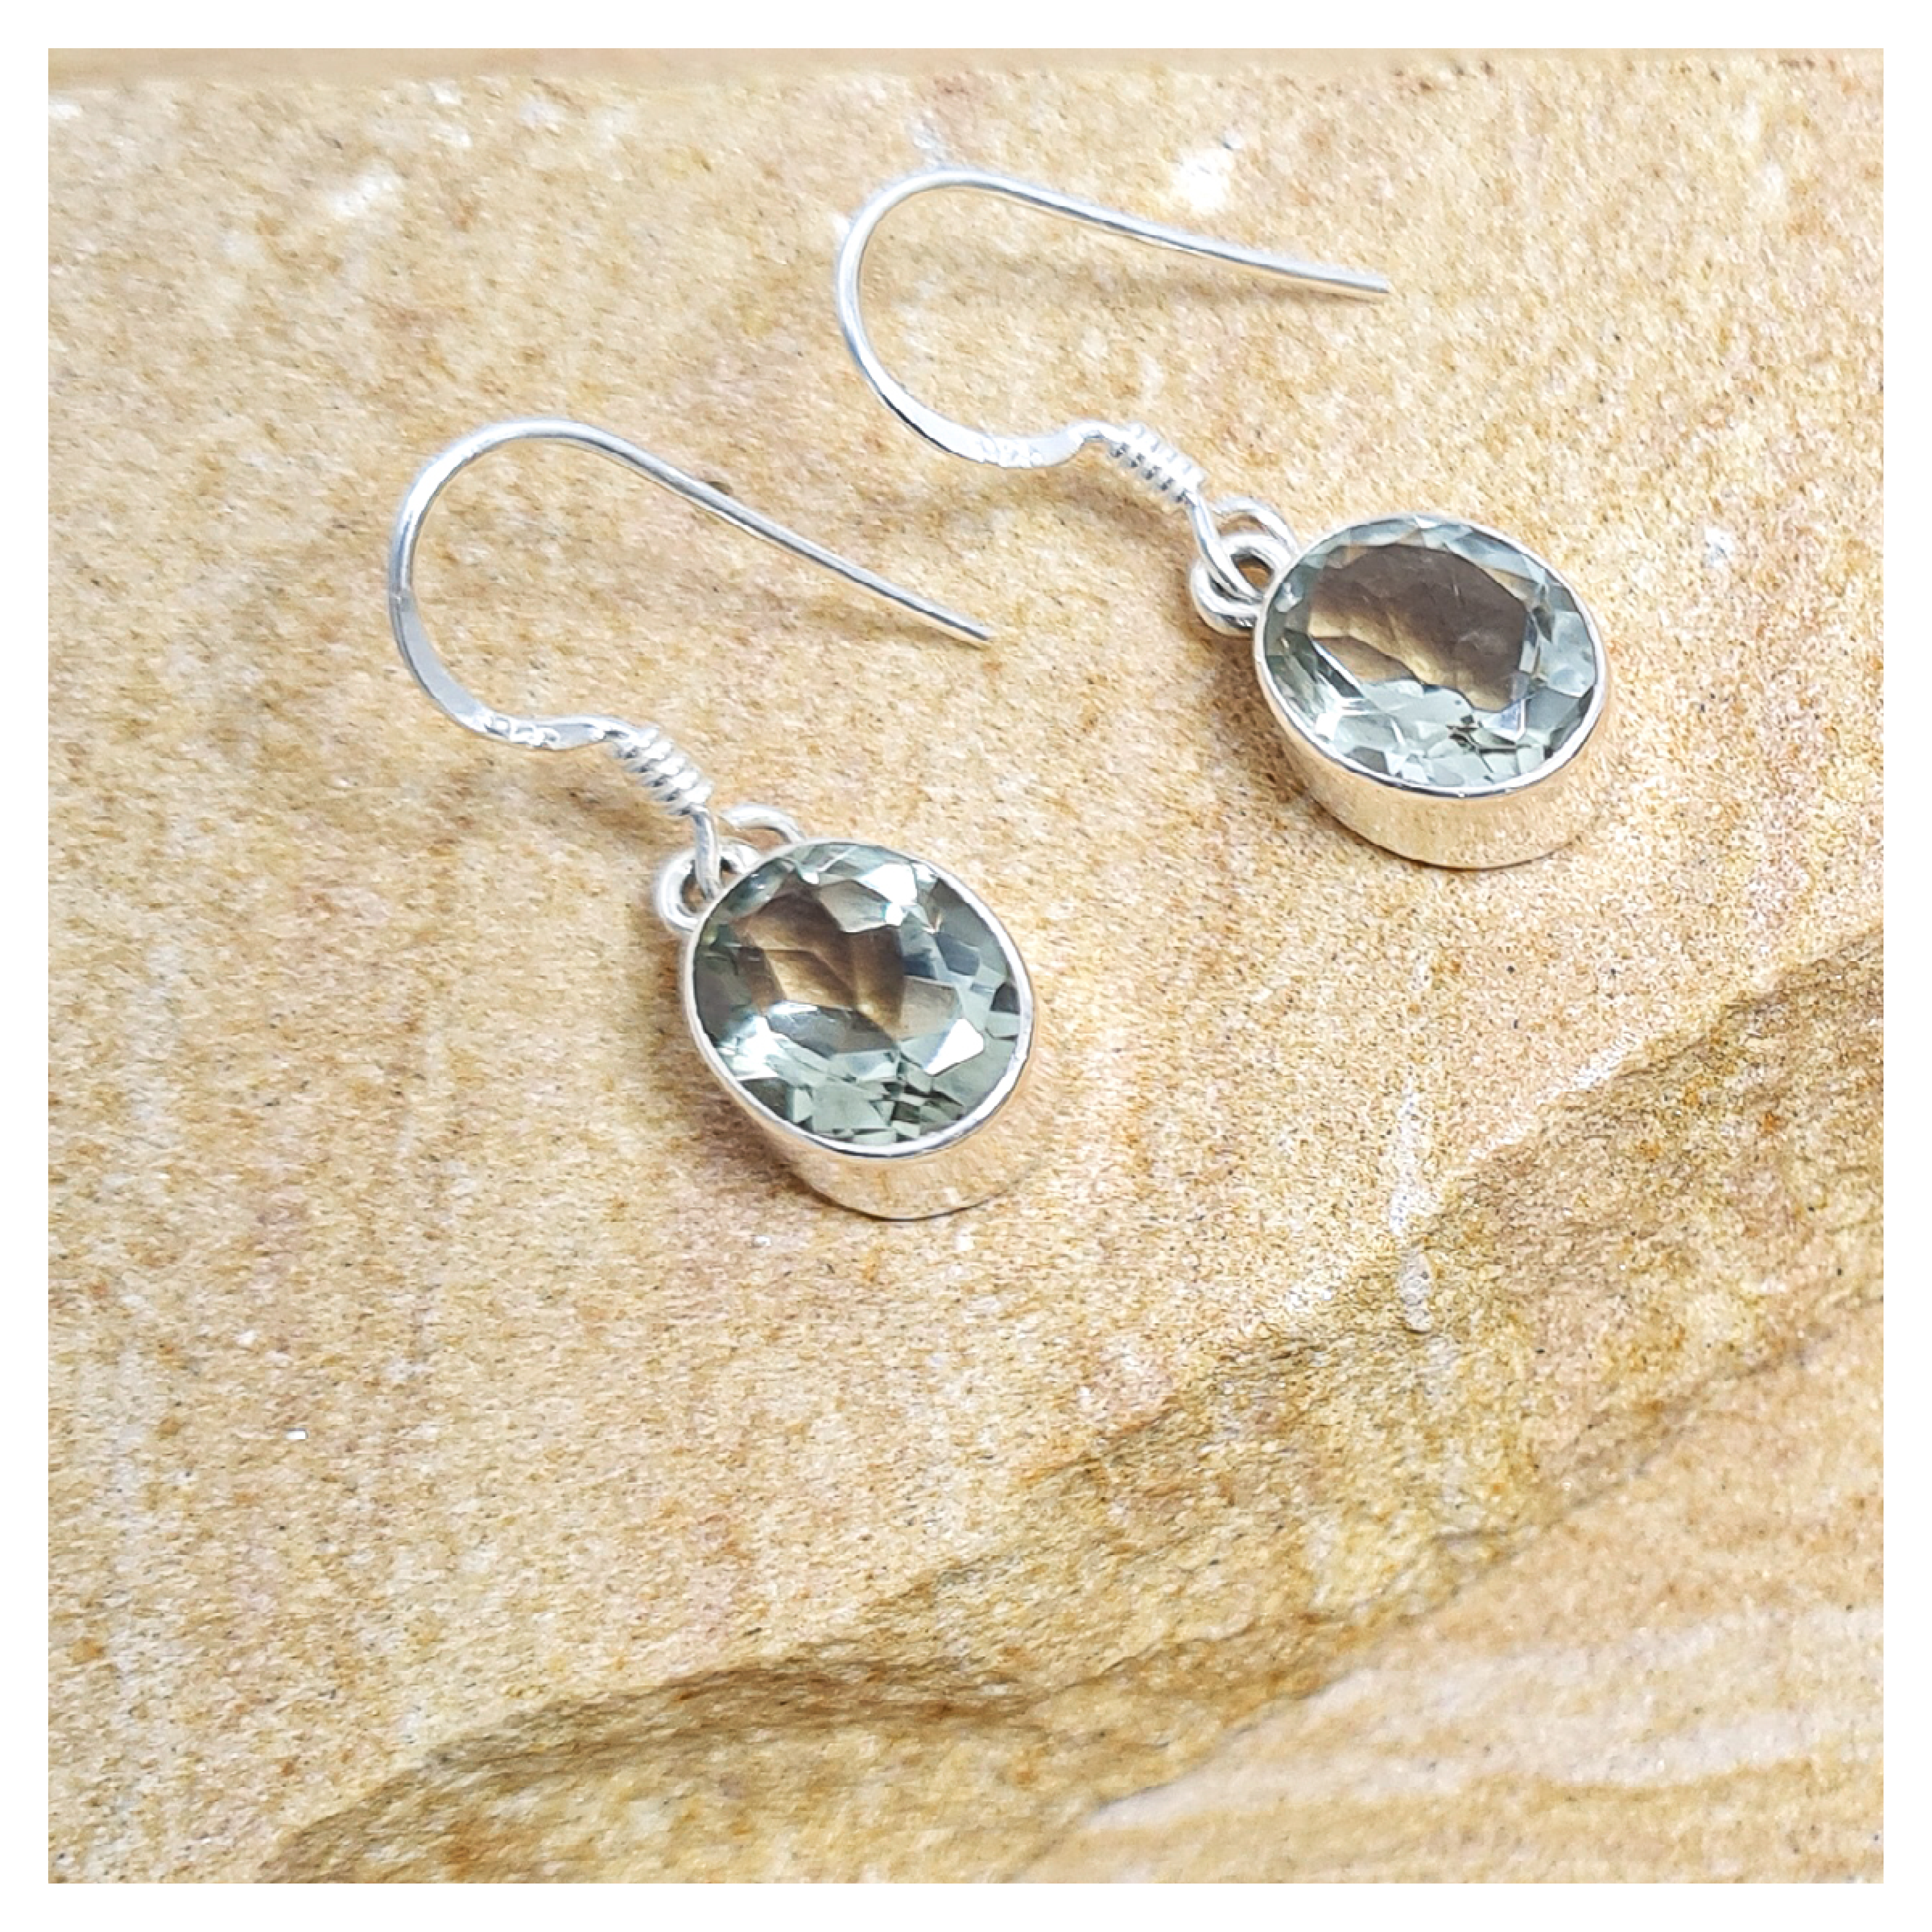 Clear quartz oval hook earrings in sterling silver